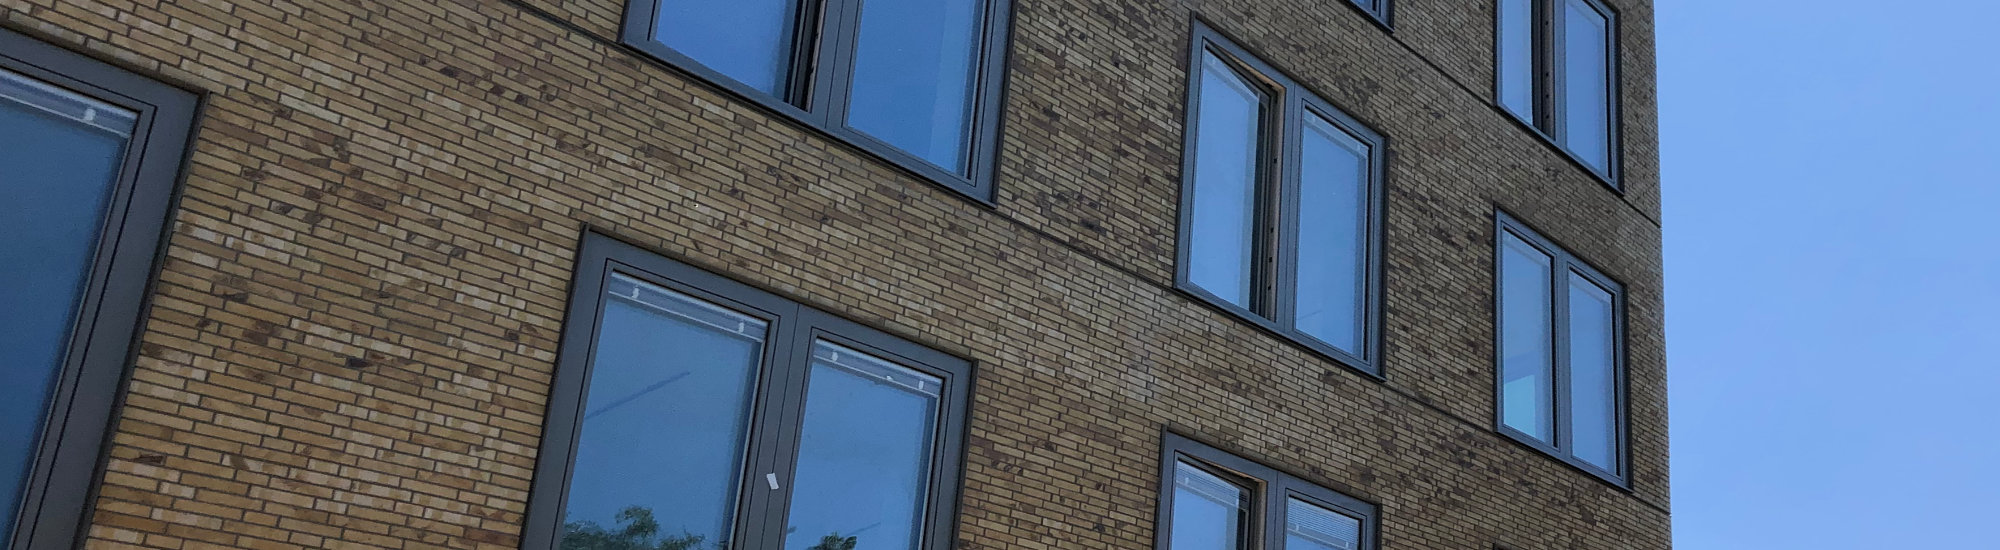 WDVS Fassade mit Klinkerriemchen anstelle von Putz in Mannheim